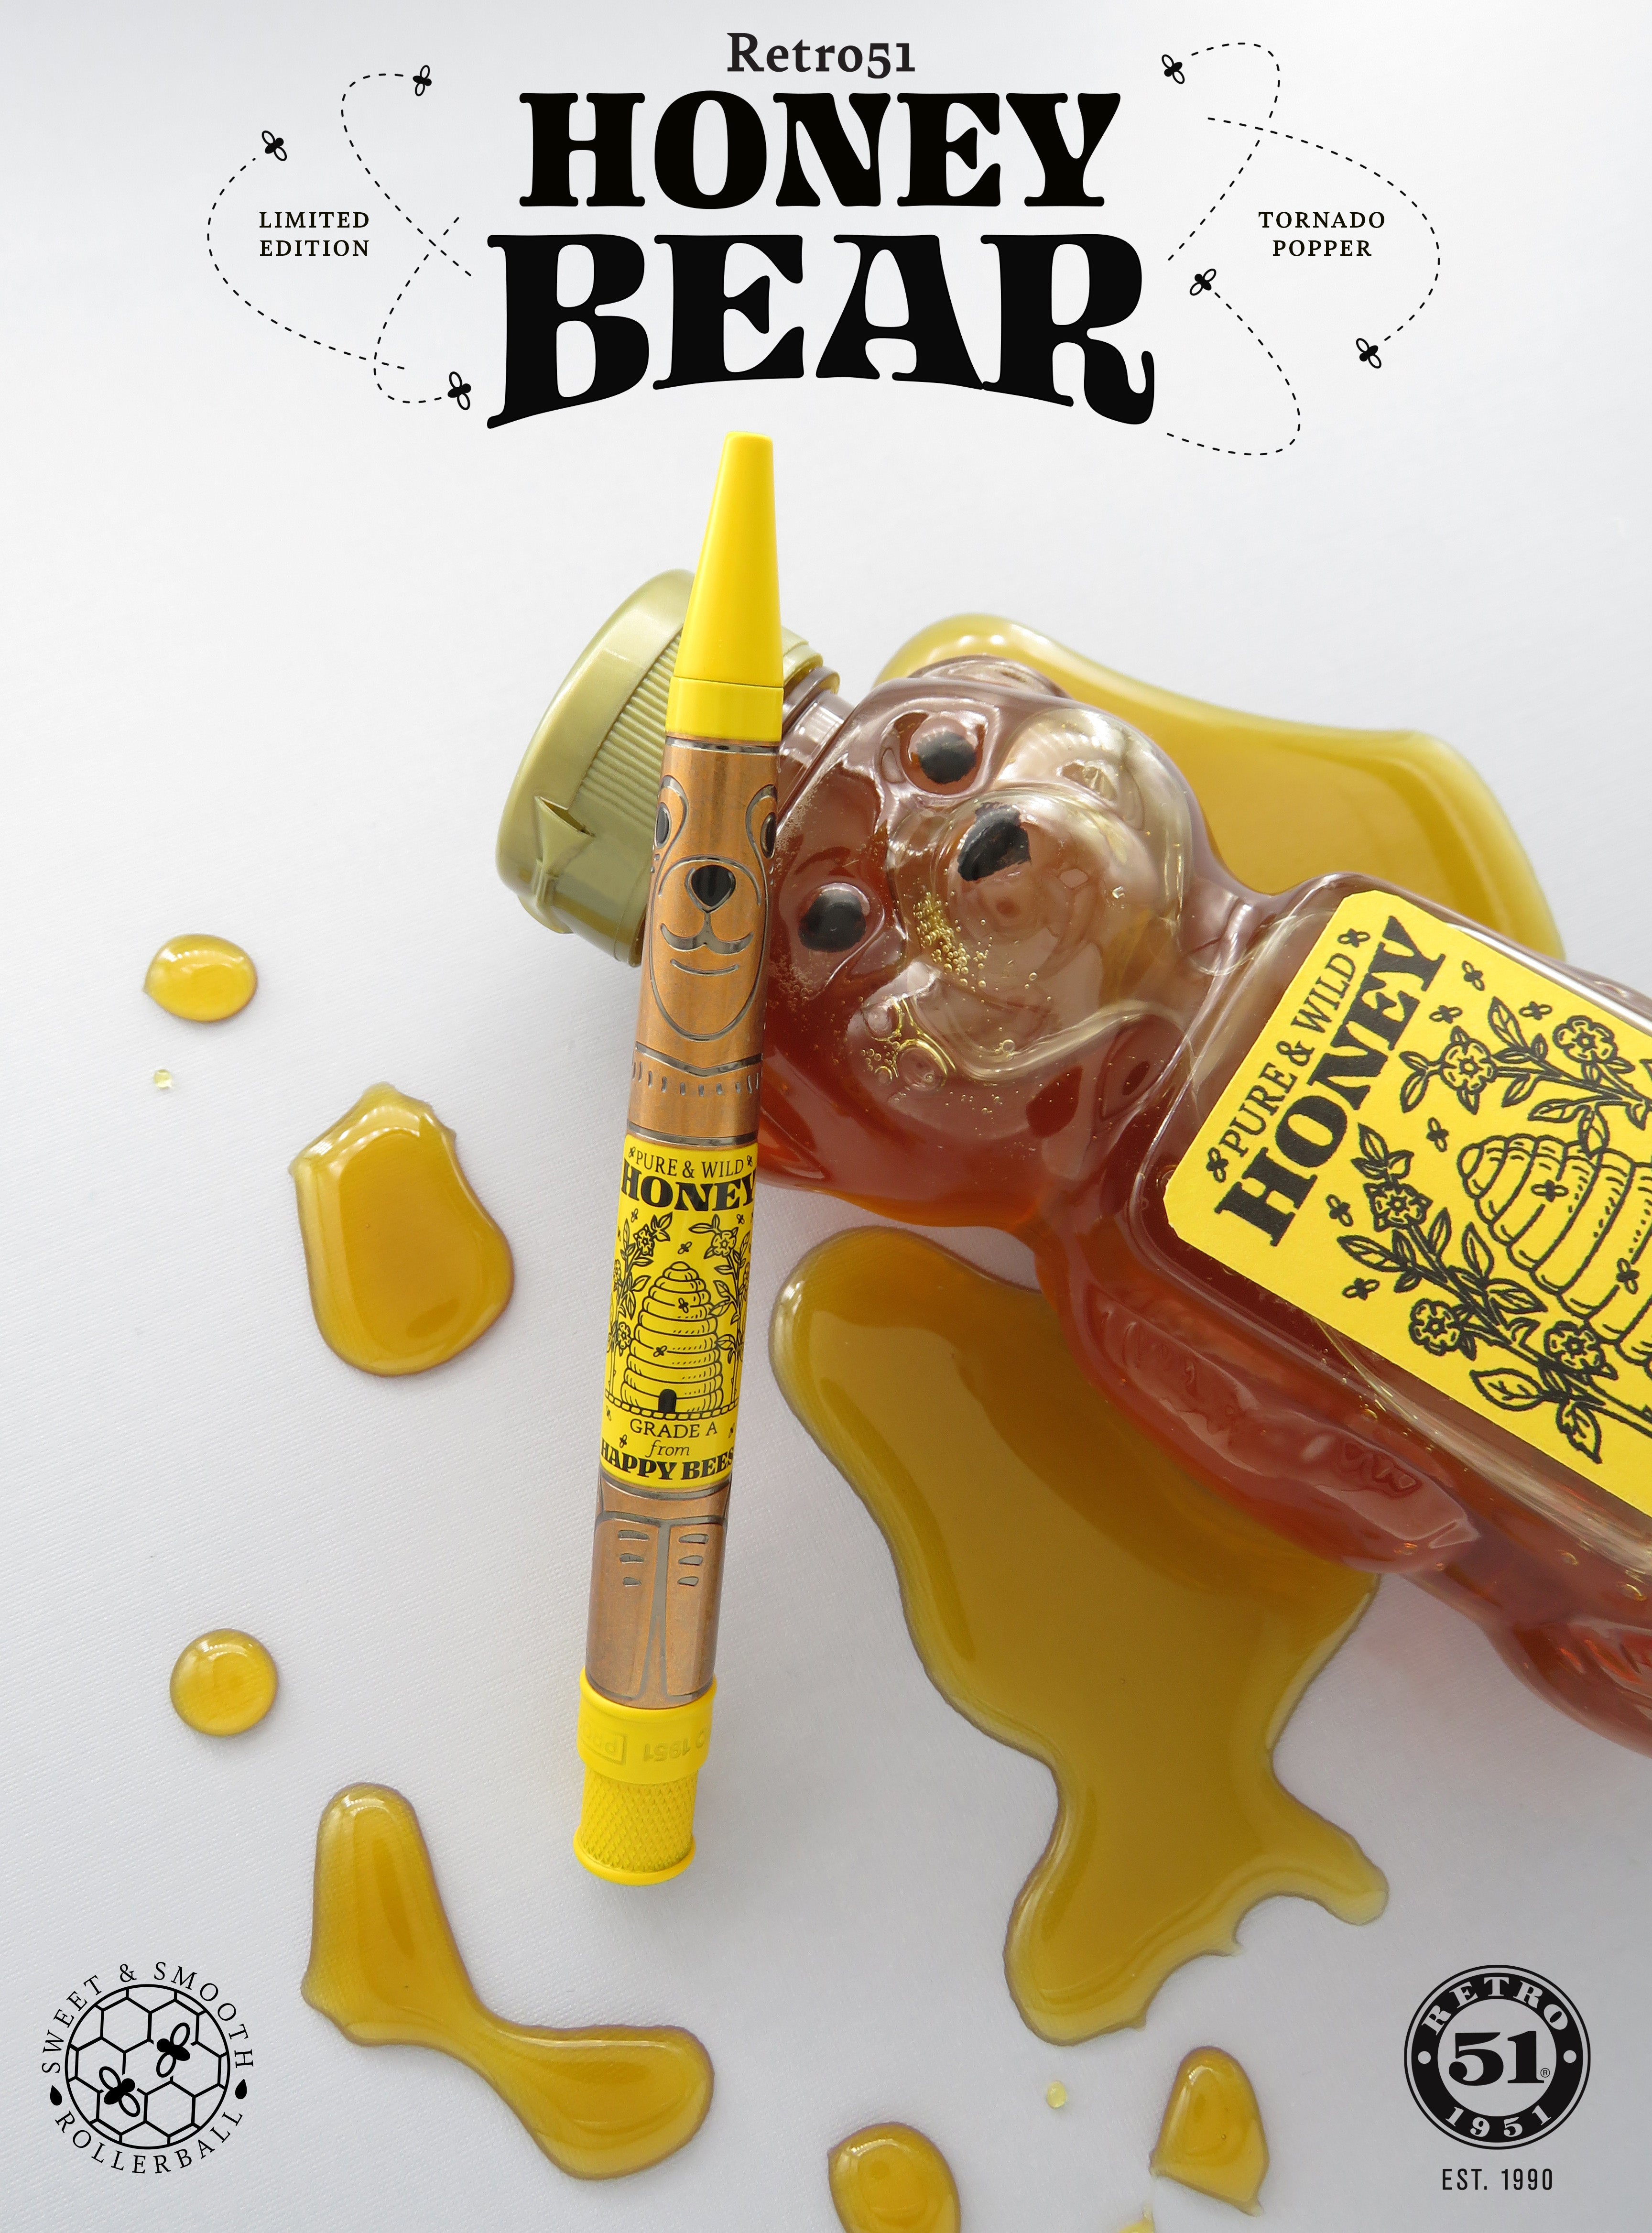 Retro 51 Honey Bear Limited Edition Tornado Popper Rollerball Pen